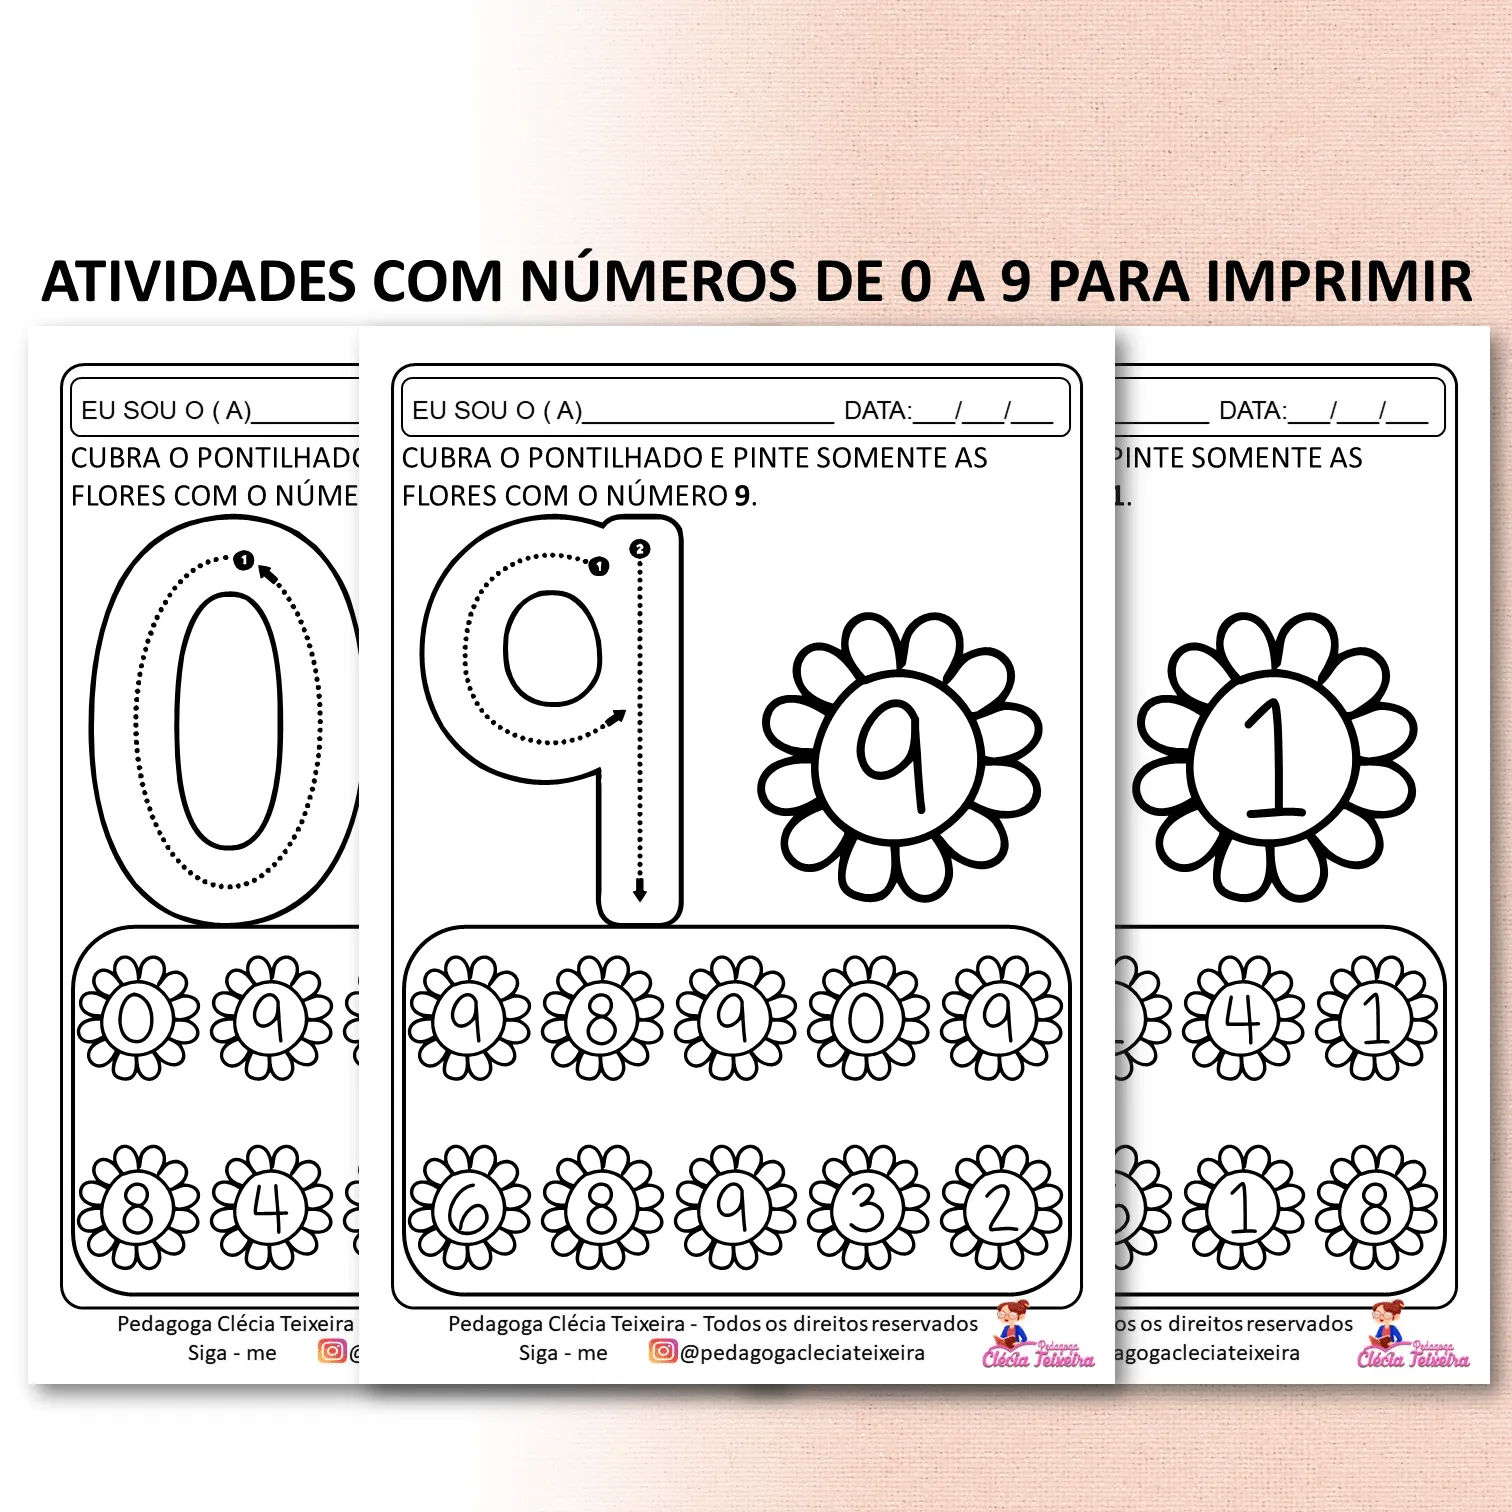 Atividades com números de 0 a 9 para imprimir - Clécia Teixeira